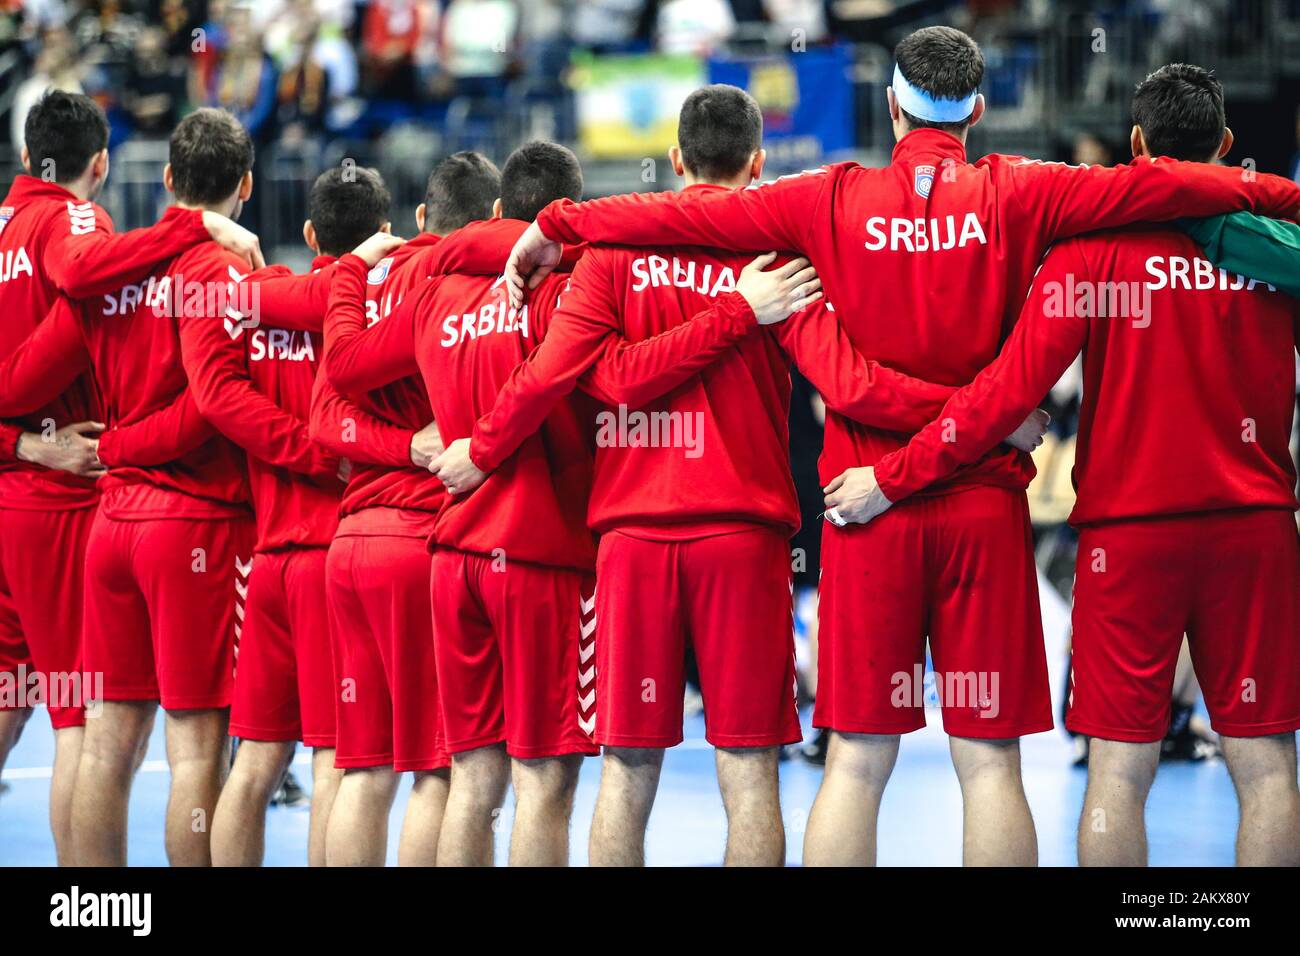 Berlín, Alemania, 15 de enero de 2019: Equipo nacional de balonmano de Serbia durante el himno nacional en el curso de la Copa Mundial de Balonmano Masculino Foto de stock